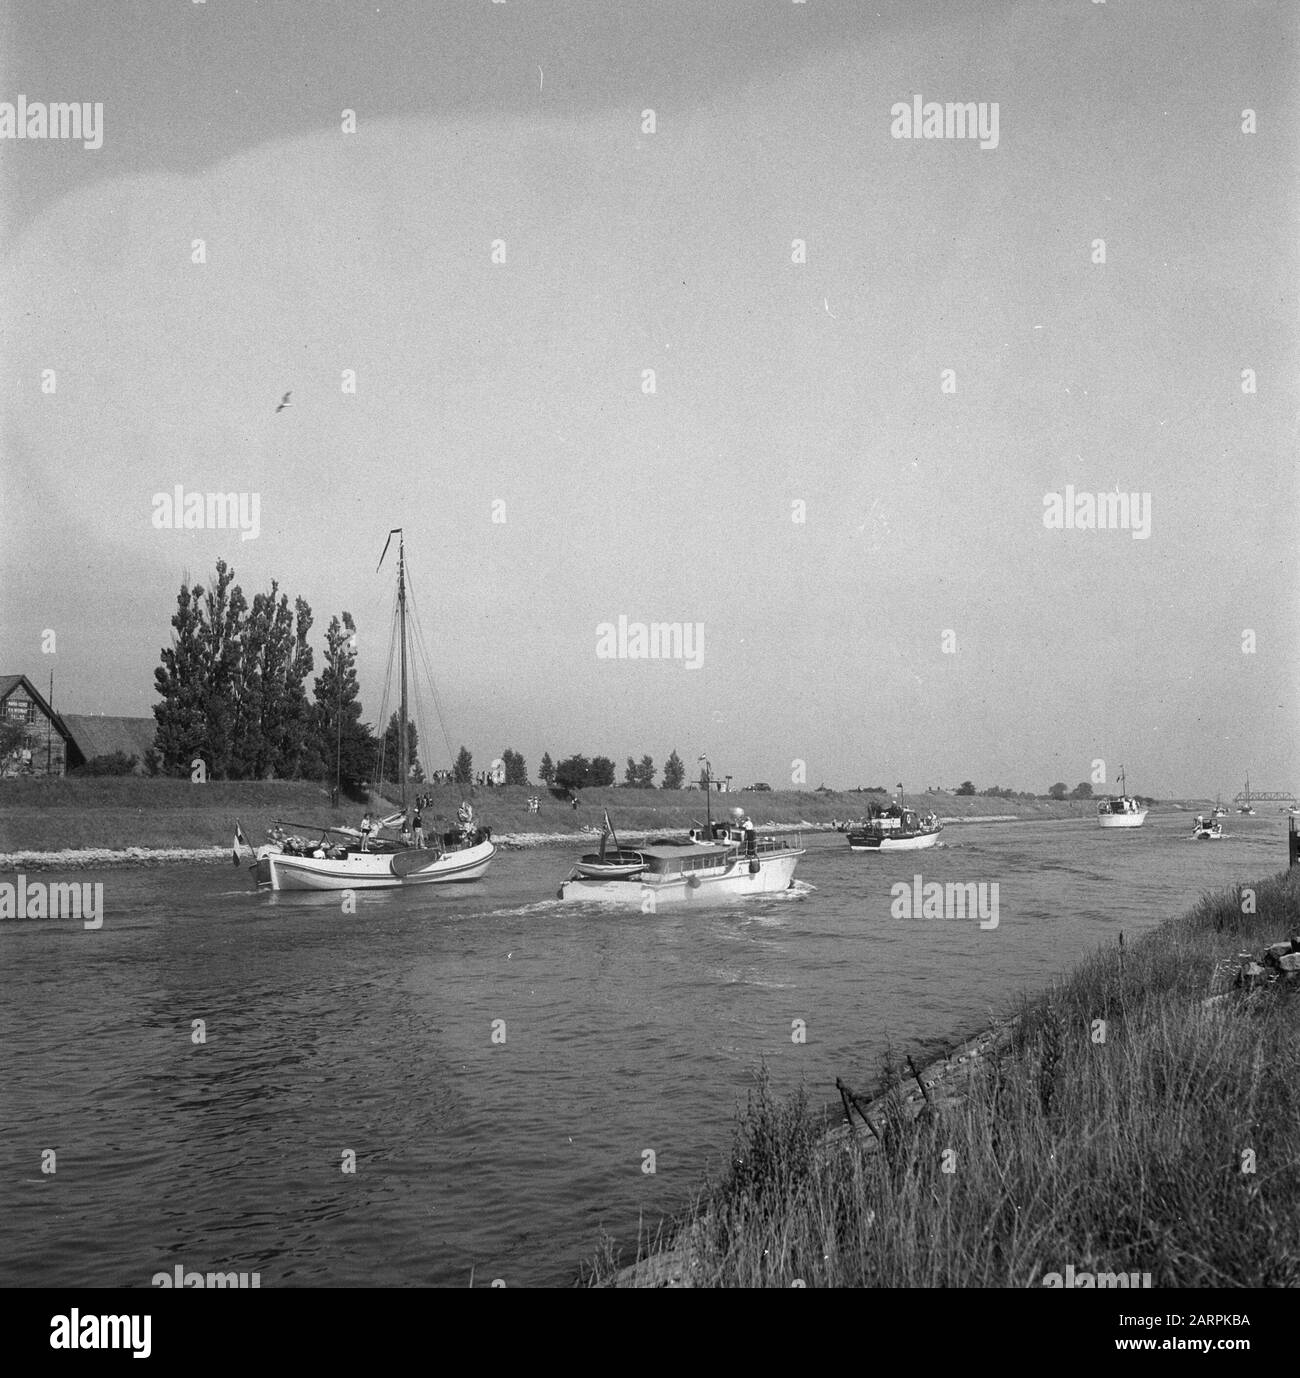 Internationaler Kreuzzug für Motorboote Terneuzen Datum: 25. Juli 1948 Ort: Terneuzen, Zeeland Schlüsselwörter: Kreuzzüge, Motorboote Stockfoto